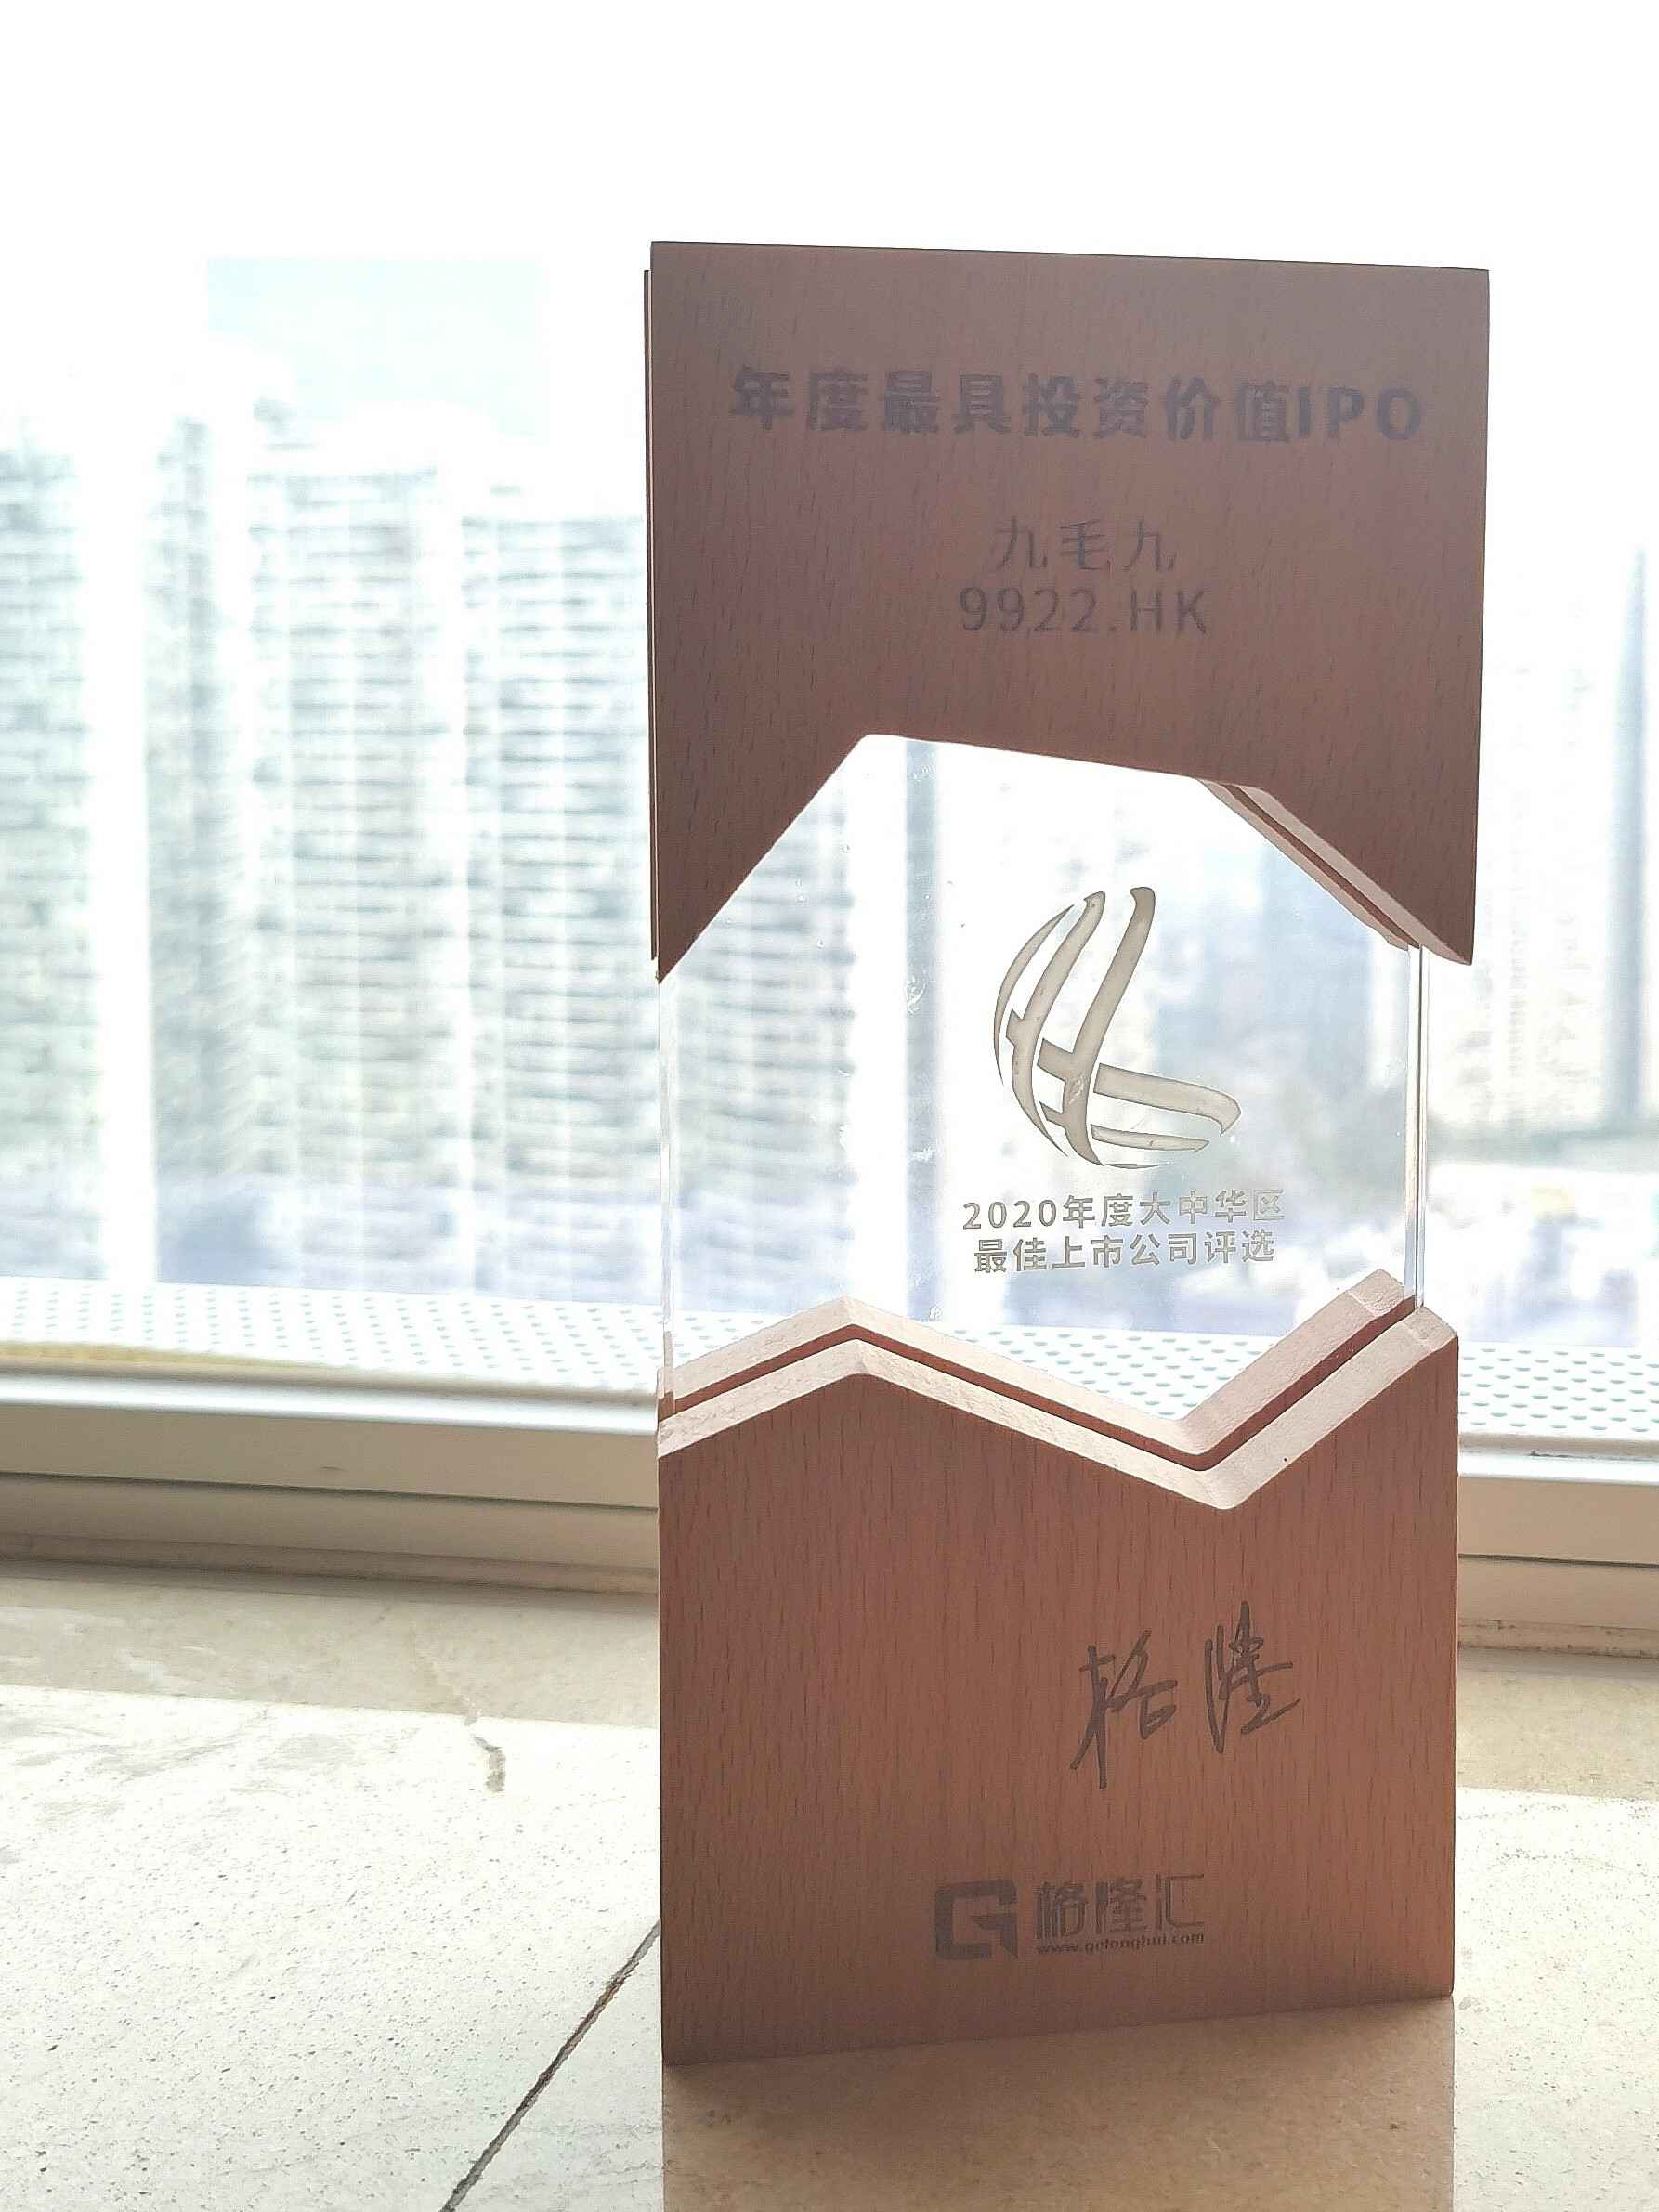 bet手机官网·(中国)上海股份有限公司荣获“2020年度最具投资价值IPO”